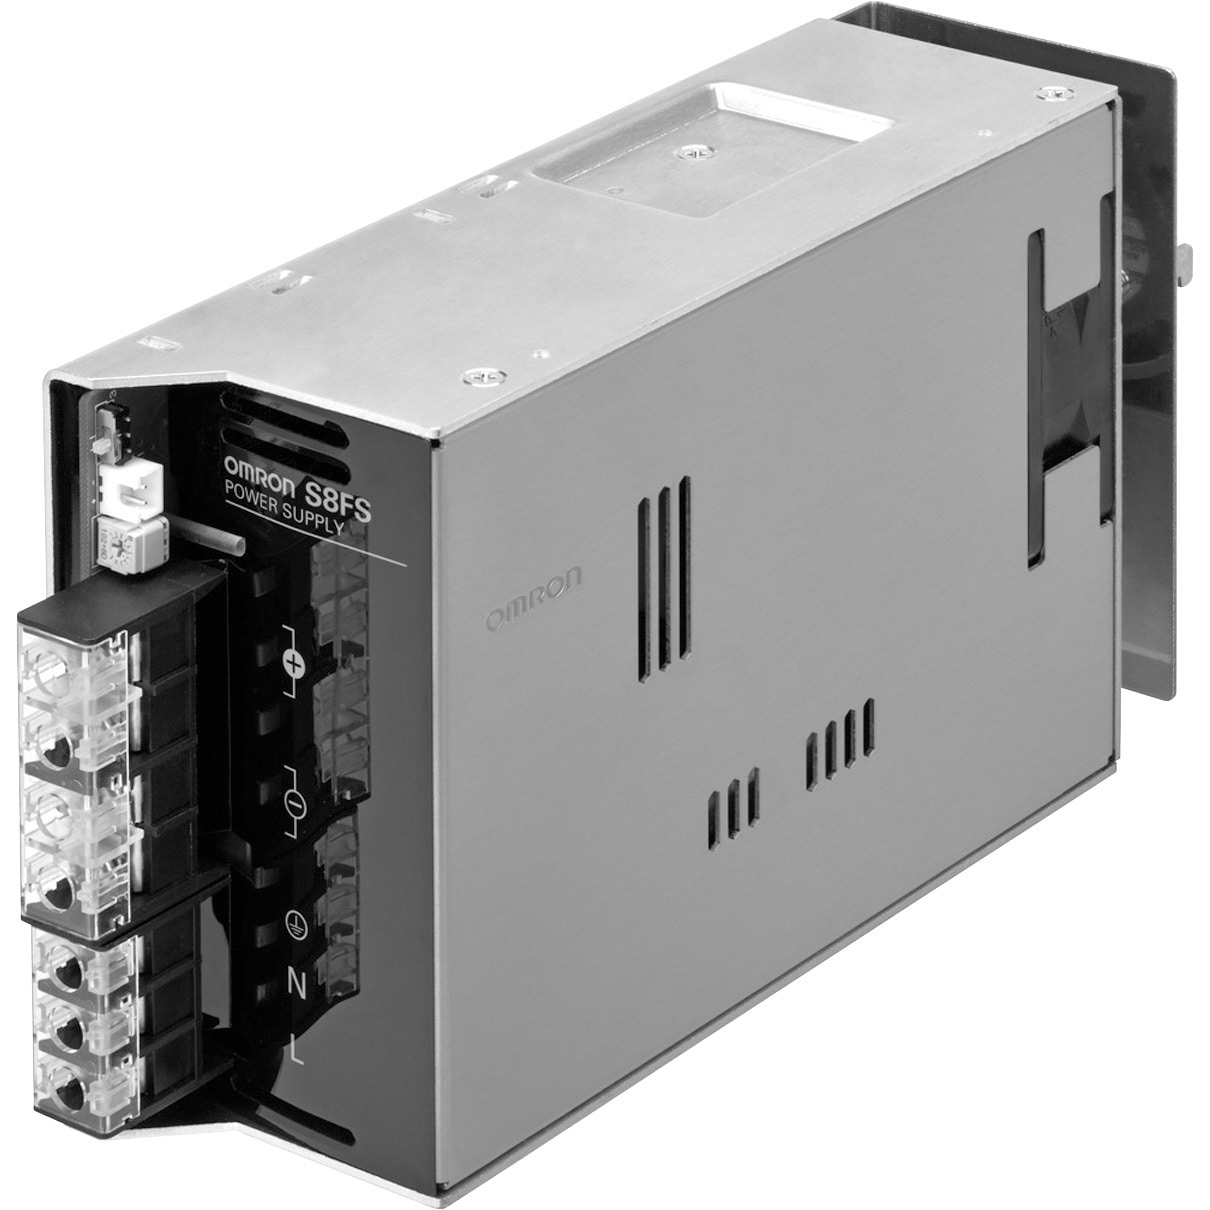 スイッチングパワーサプライ S8FS-G60024CD-